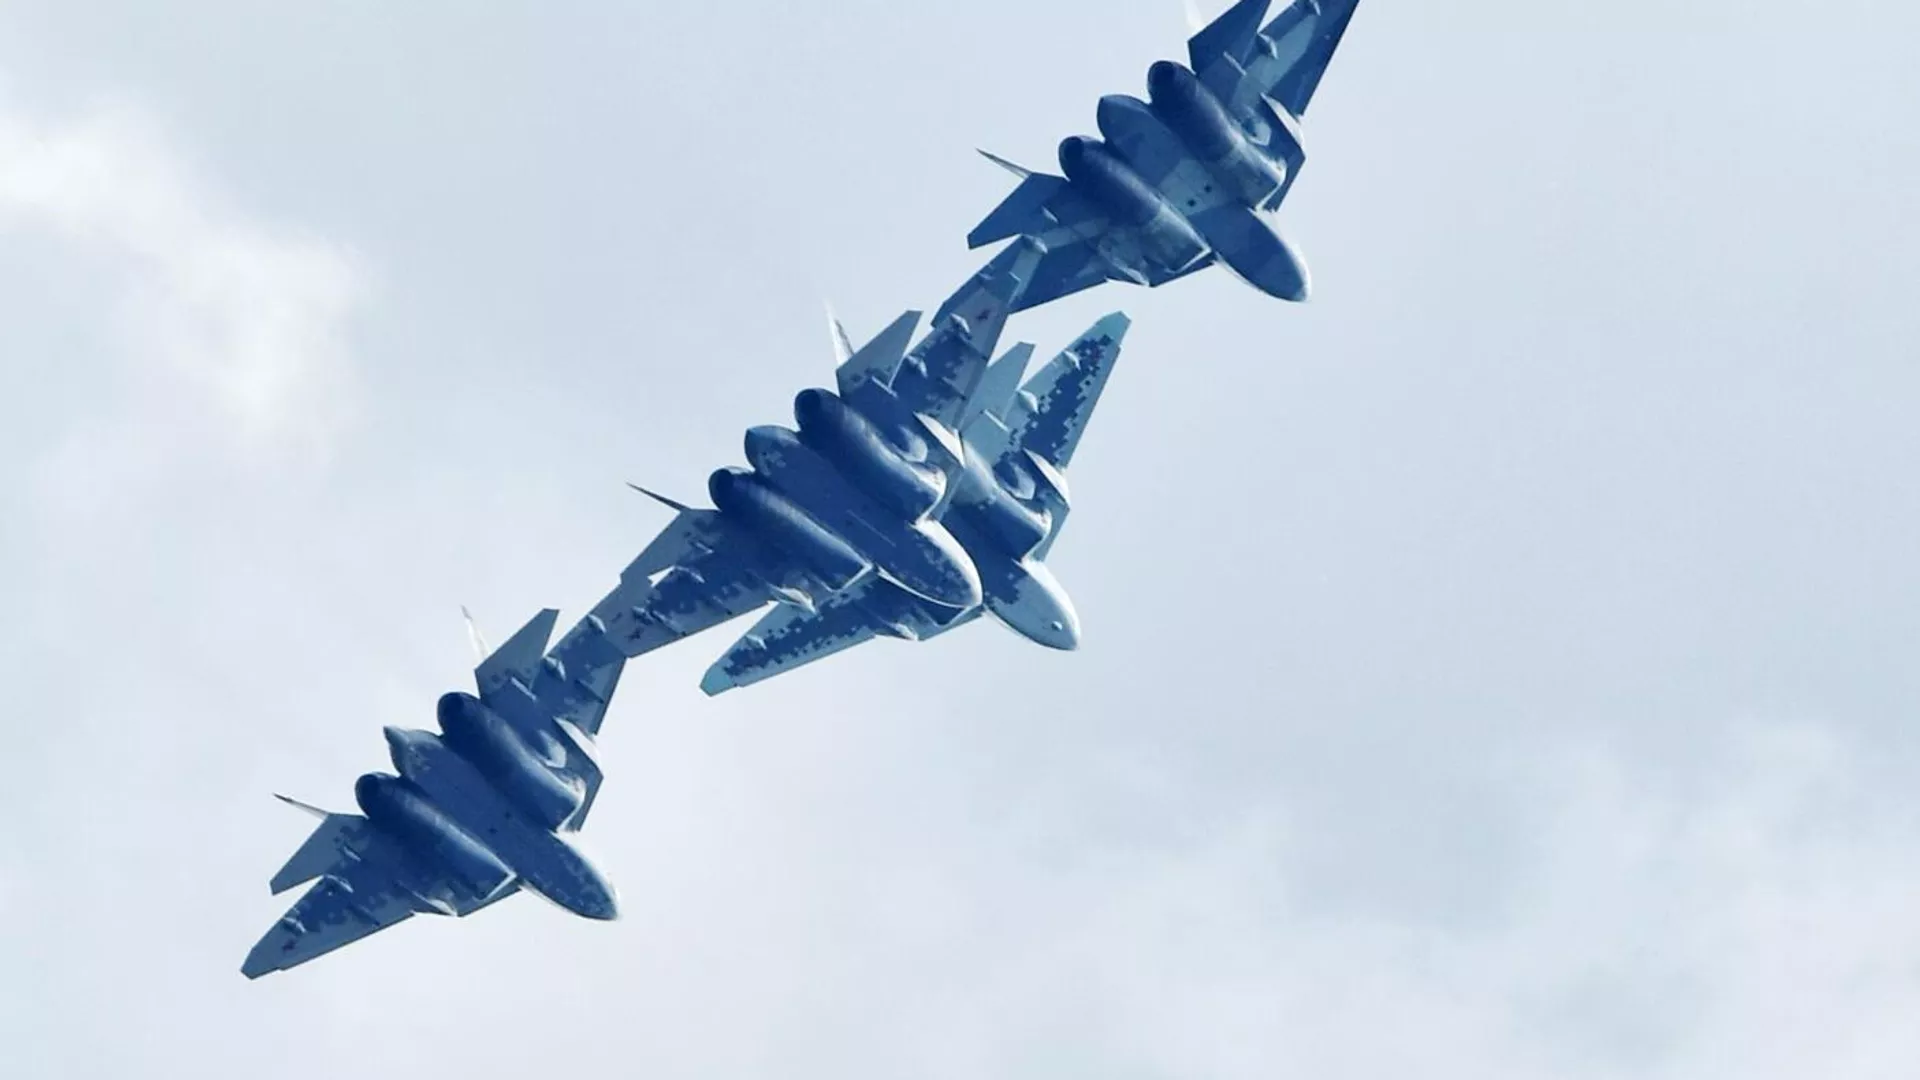 Российские многофункциональные истребители пятого поколения Су-57 выполняют демонстрационный полет на Международном авиационно-космическом салоне МАКС-2019 в подмосковном Жуковском - РИА Новости, 1920, 15.07.2021